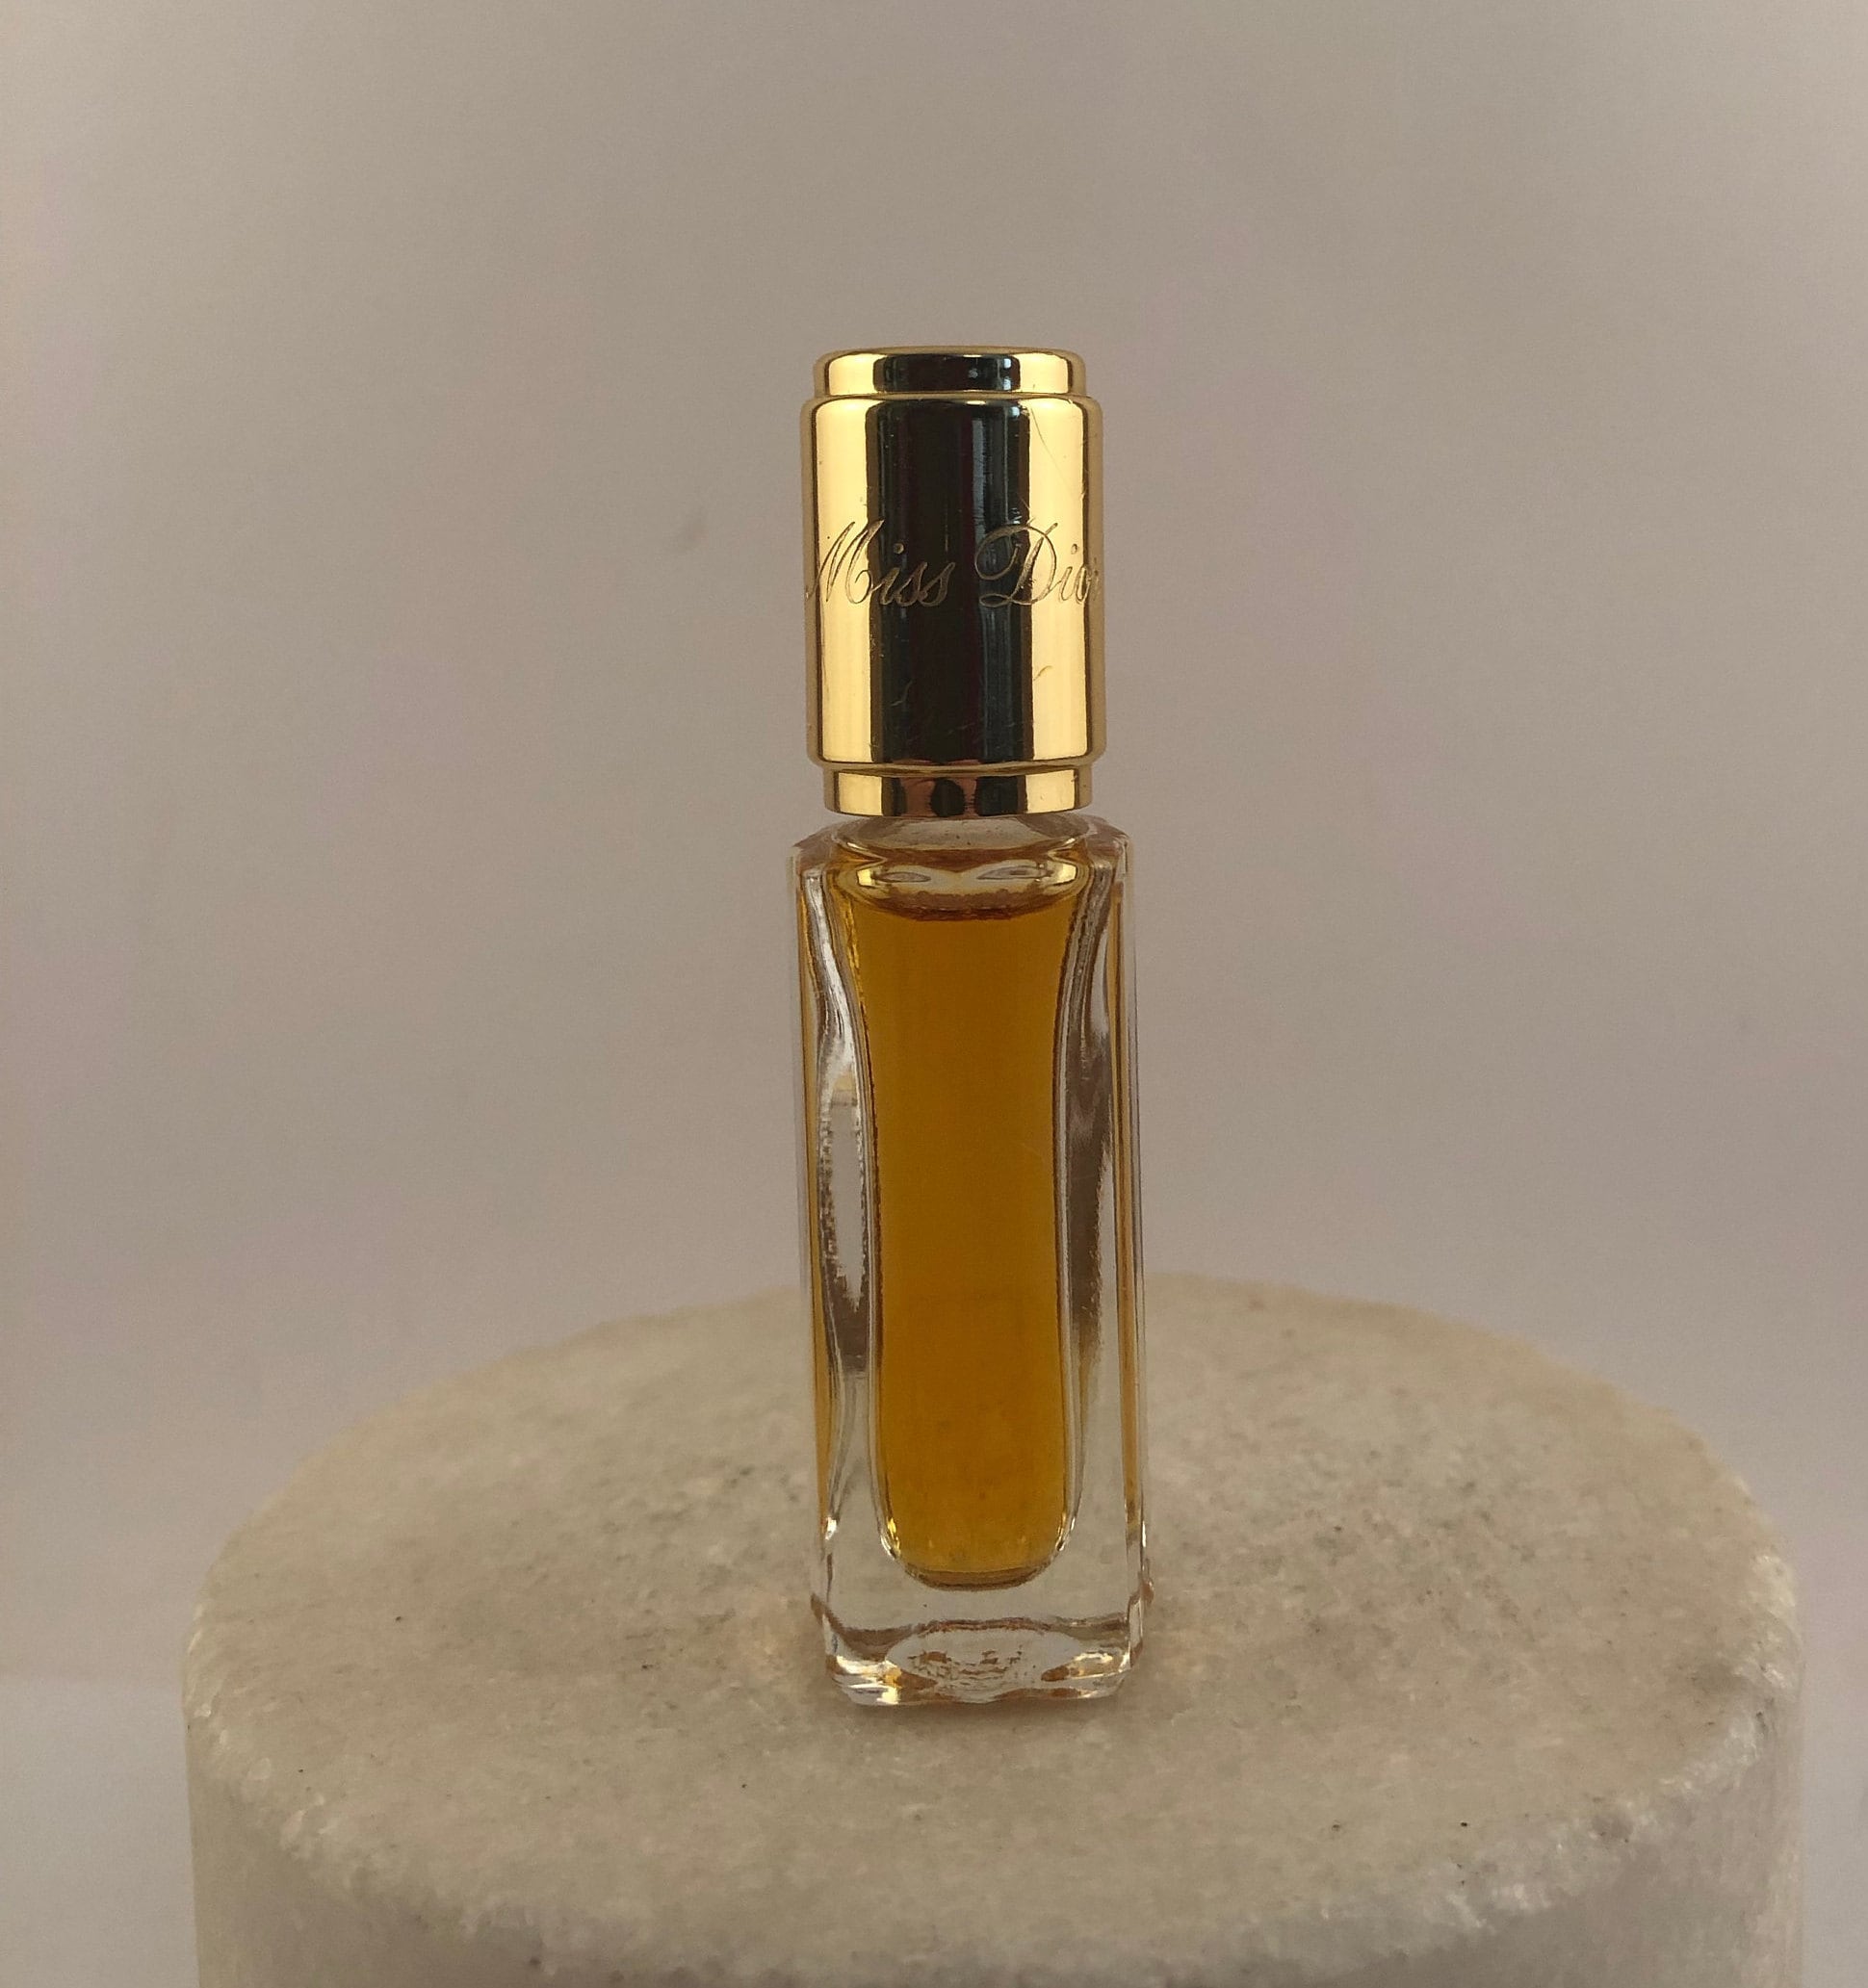 Miss Dior Cherie (Vintage) - Eau de Parfum - Parfumerie Mania